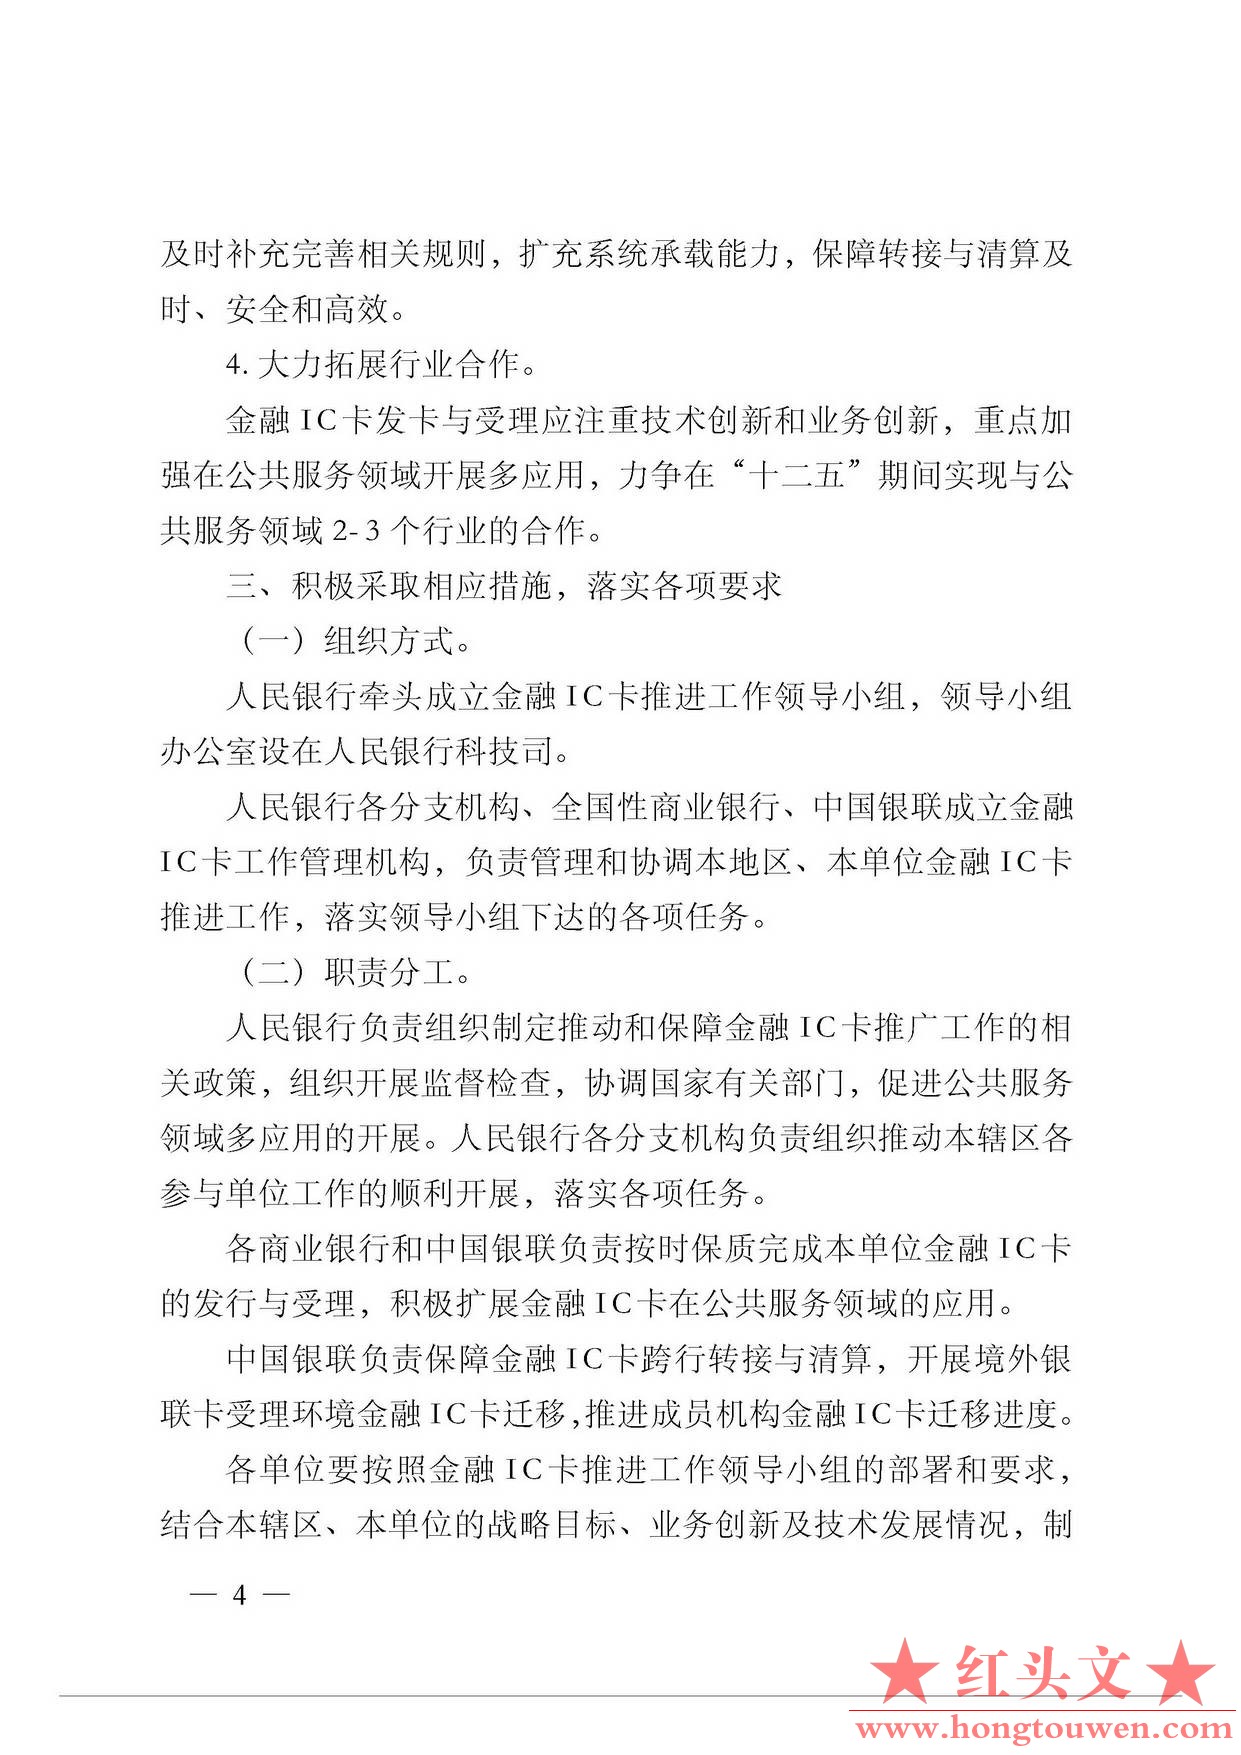 银发[2011]64号-中国人民银行关于推进金融IC卡应用工作的意见_页面_4.jpg.jpg